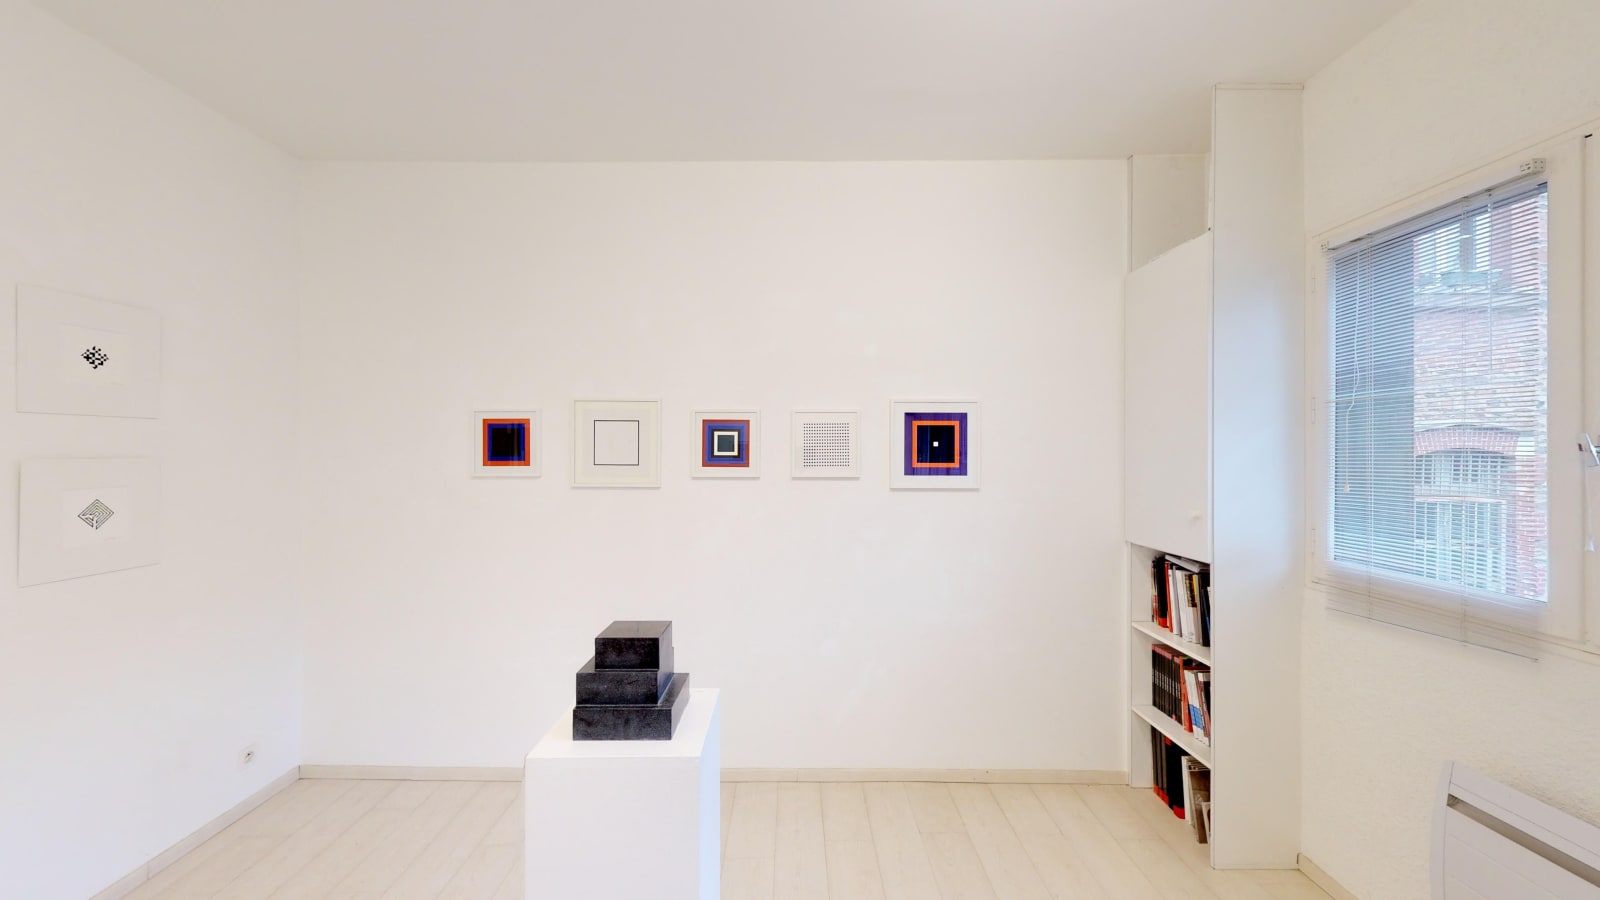 Petits Formats & Oeuvres sur Papier / exposition de groupe des artistes de la galerie / Oniris 2019-2020